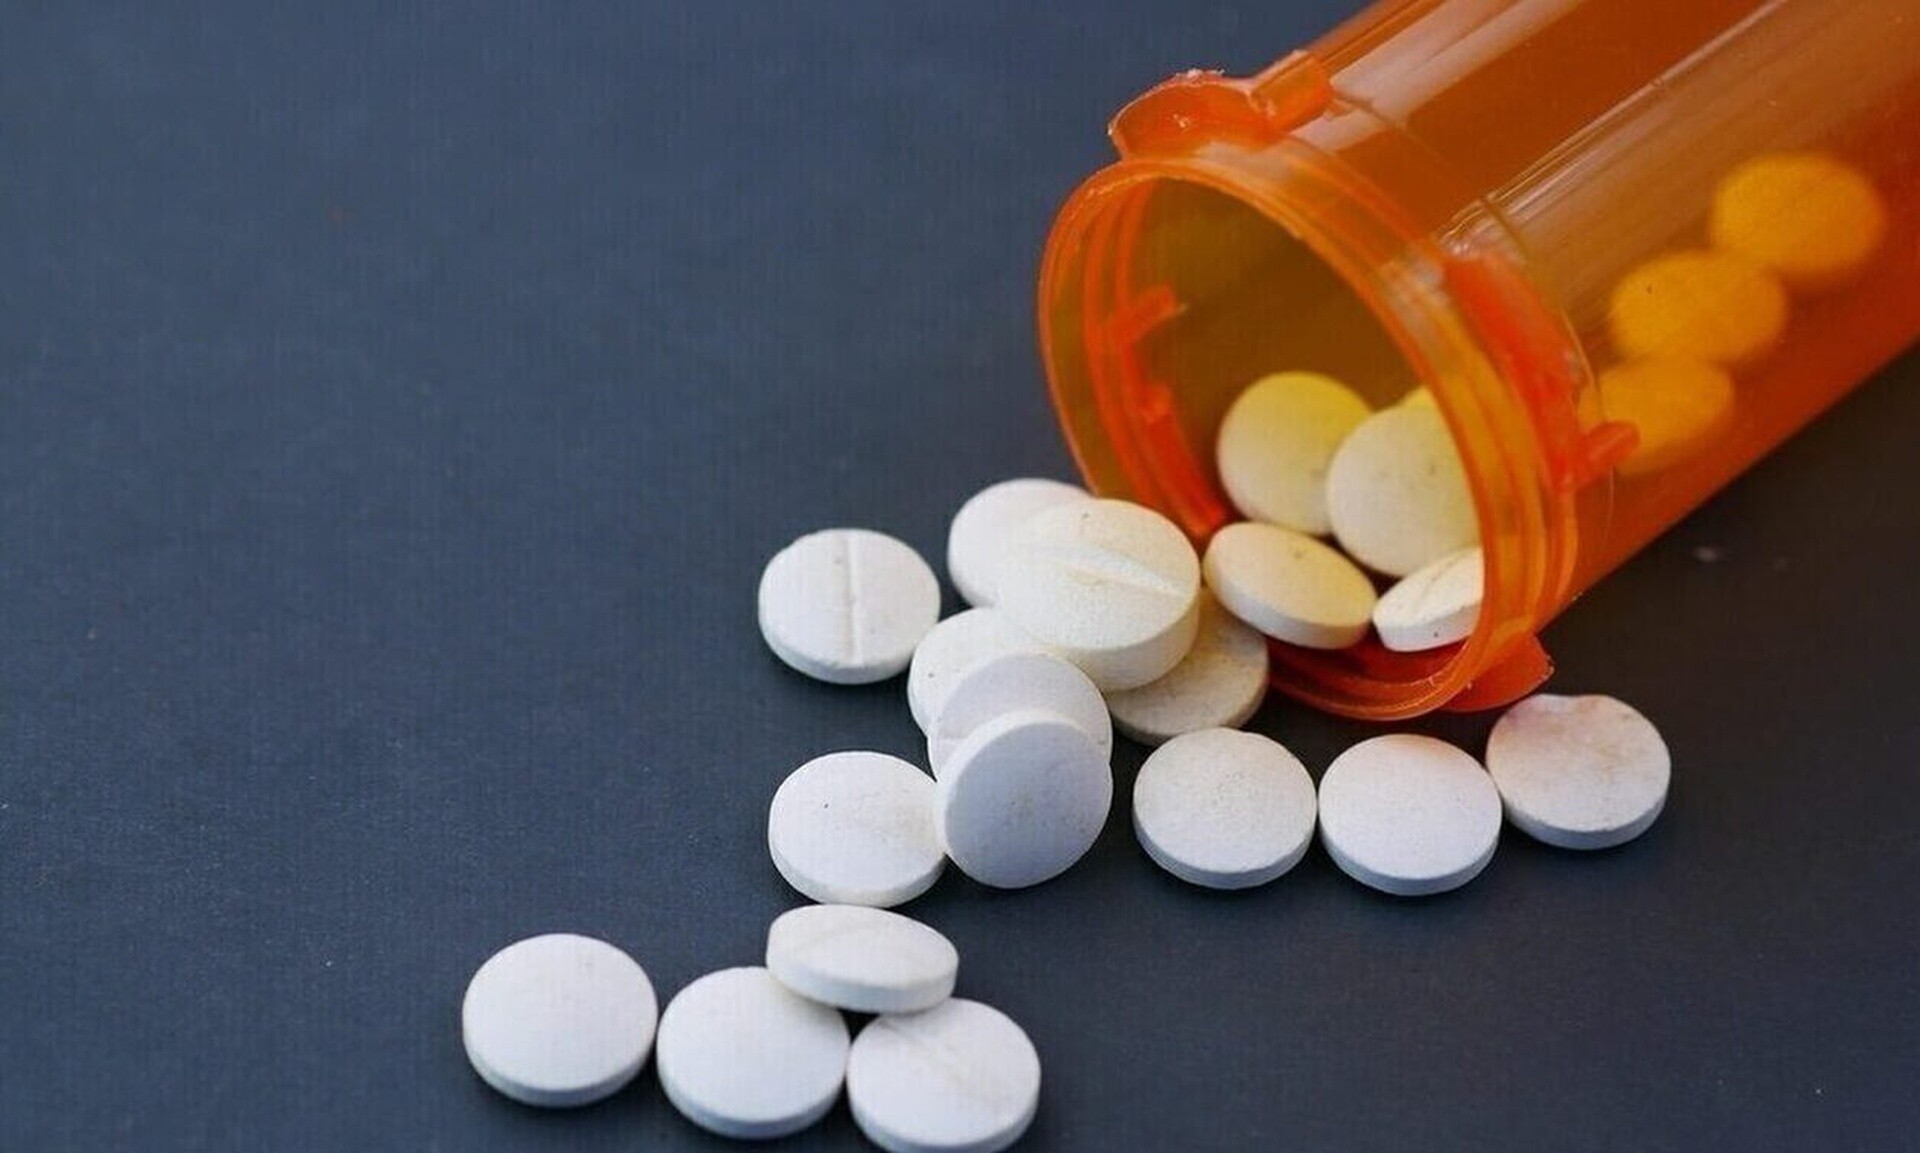 Πάτρα: 32χρονη αποπειράθηκε να αυτοκτονήσει με χάπια